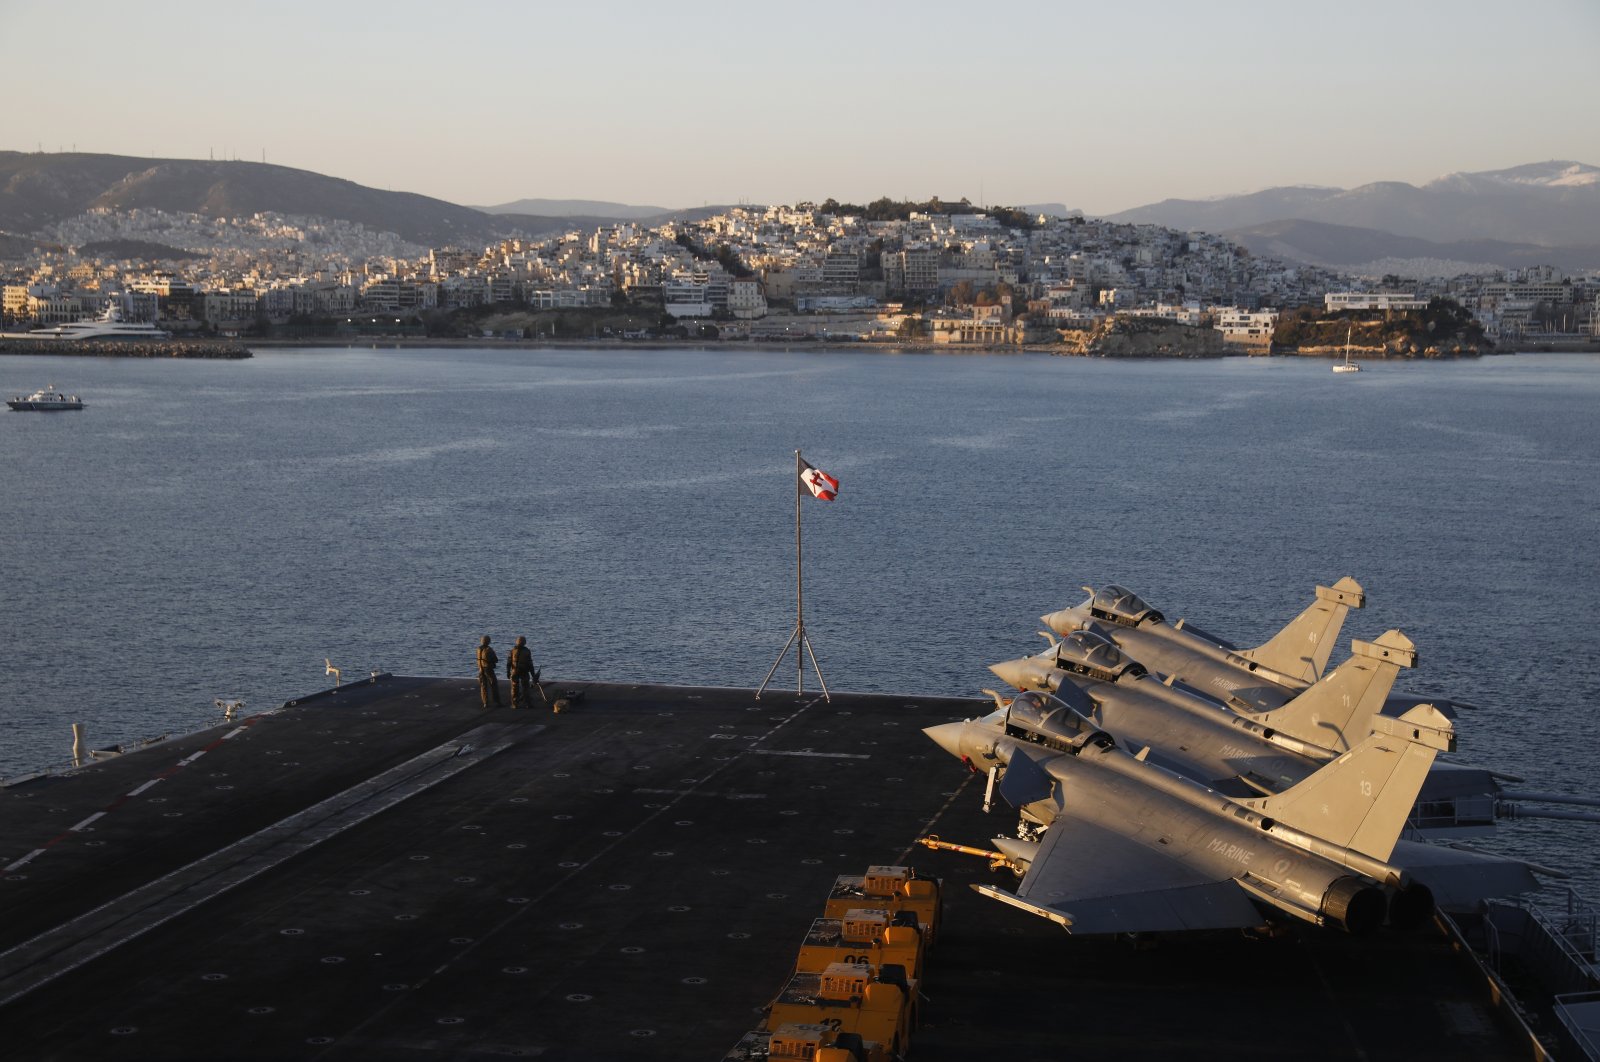 Yunani membeli 6 jet Rafale lagi, fregat di tengah ketegangan dengan Turki